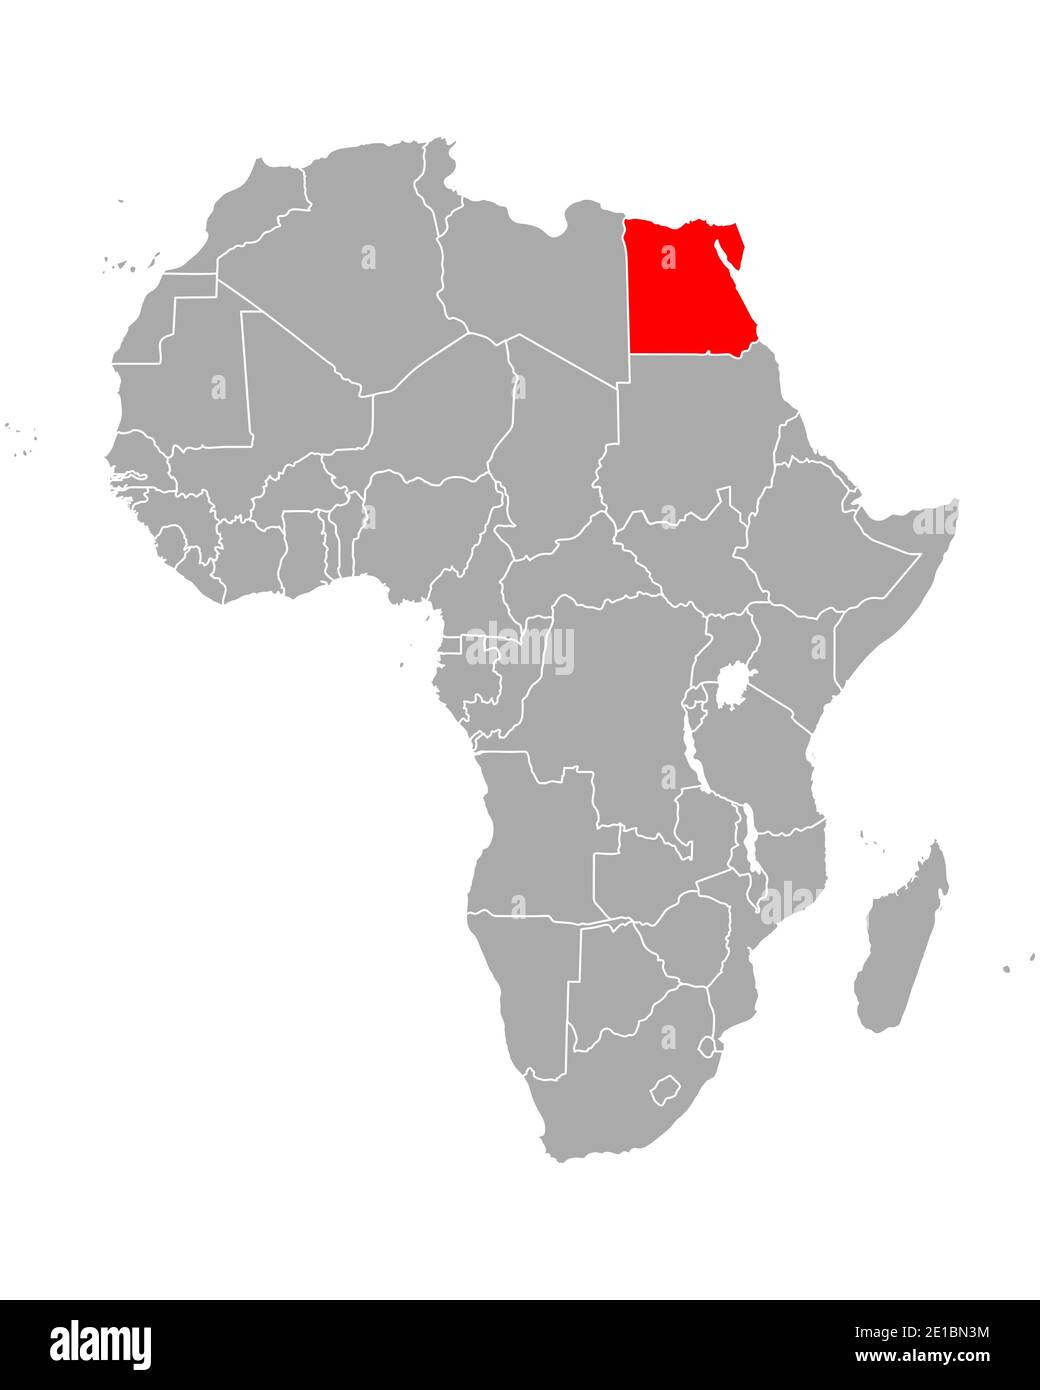 mappa-dell-egitto-in-africa-2e1bn3m.jpg